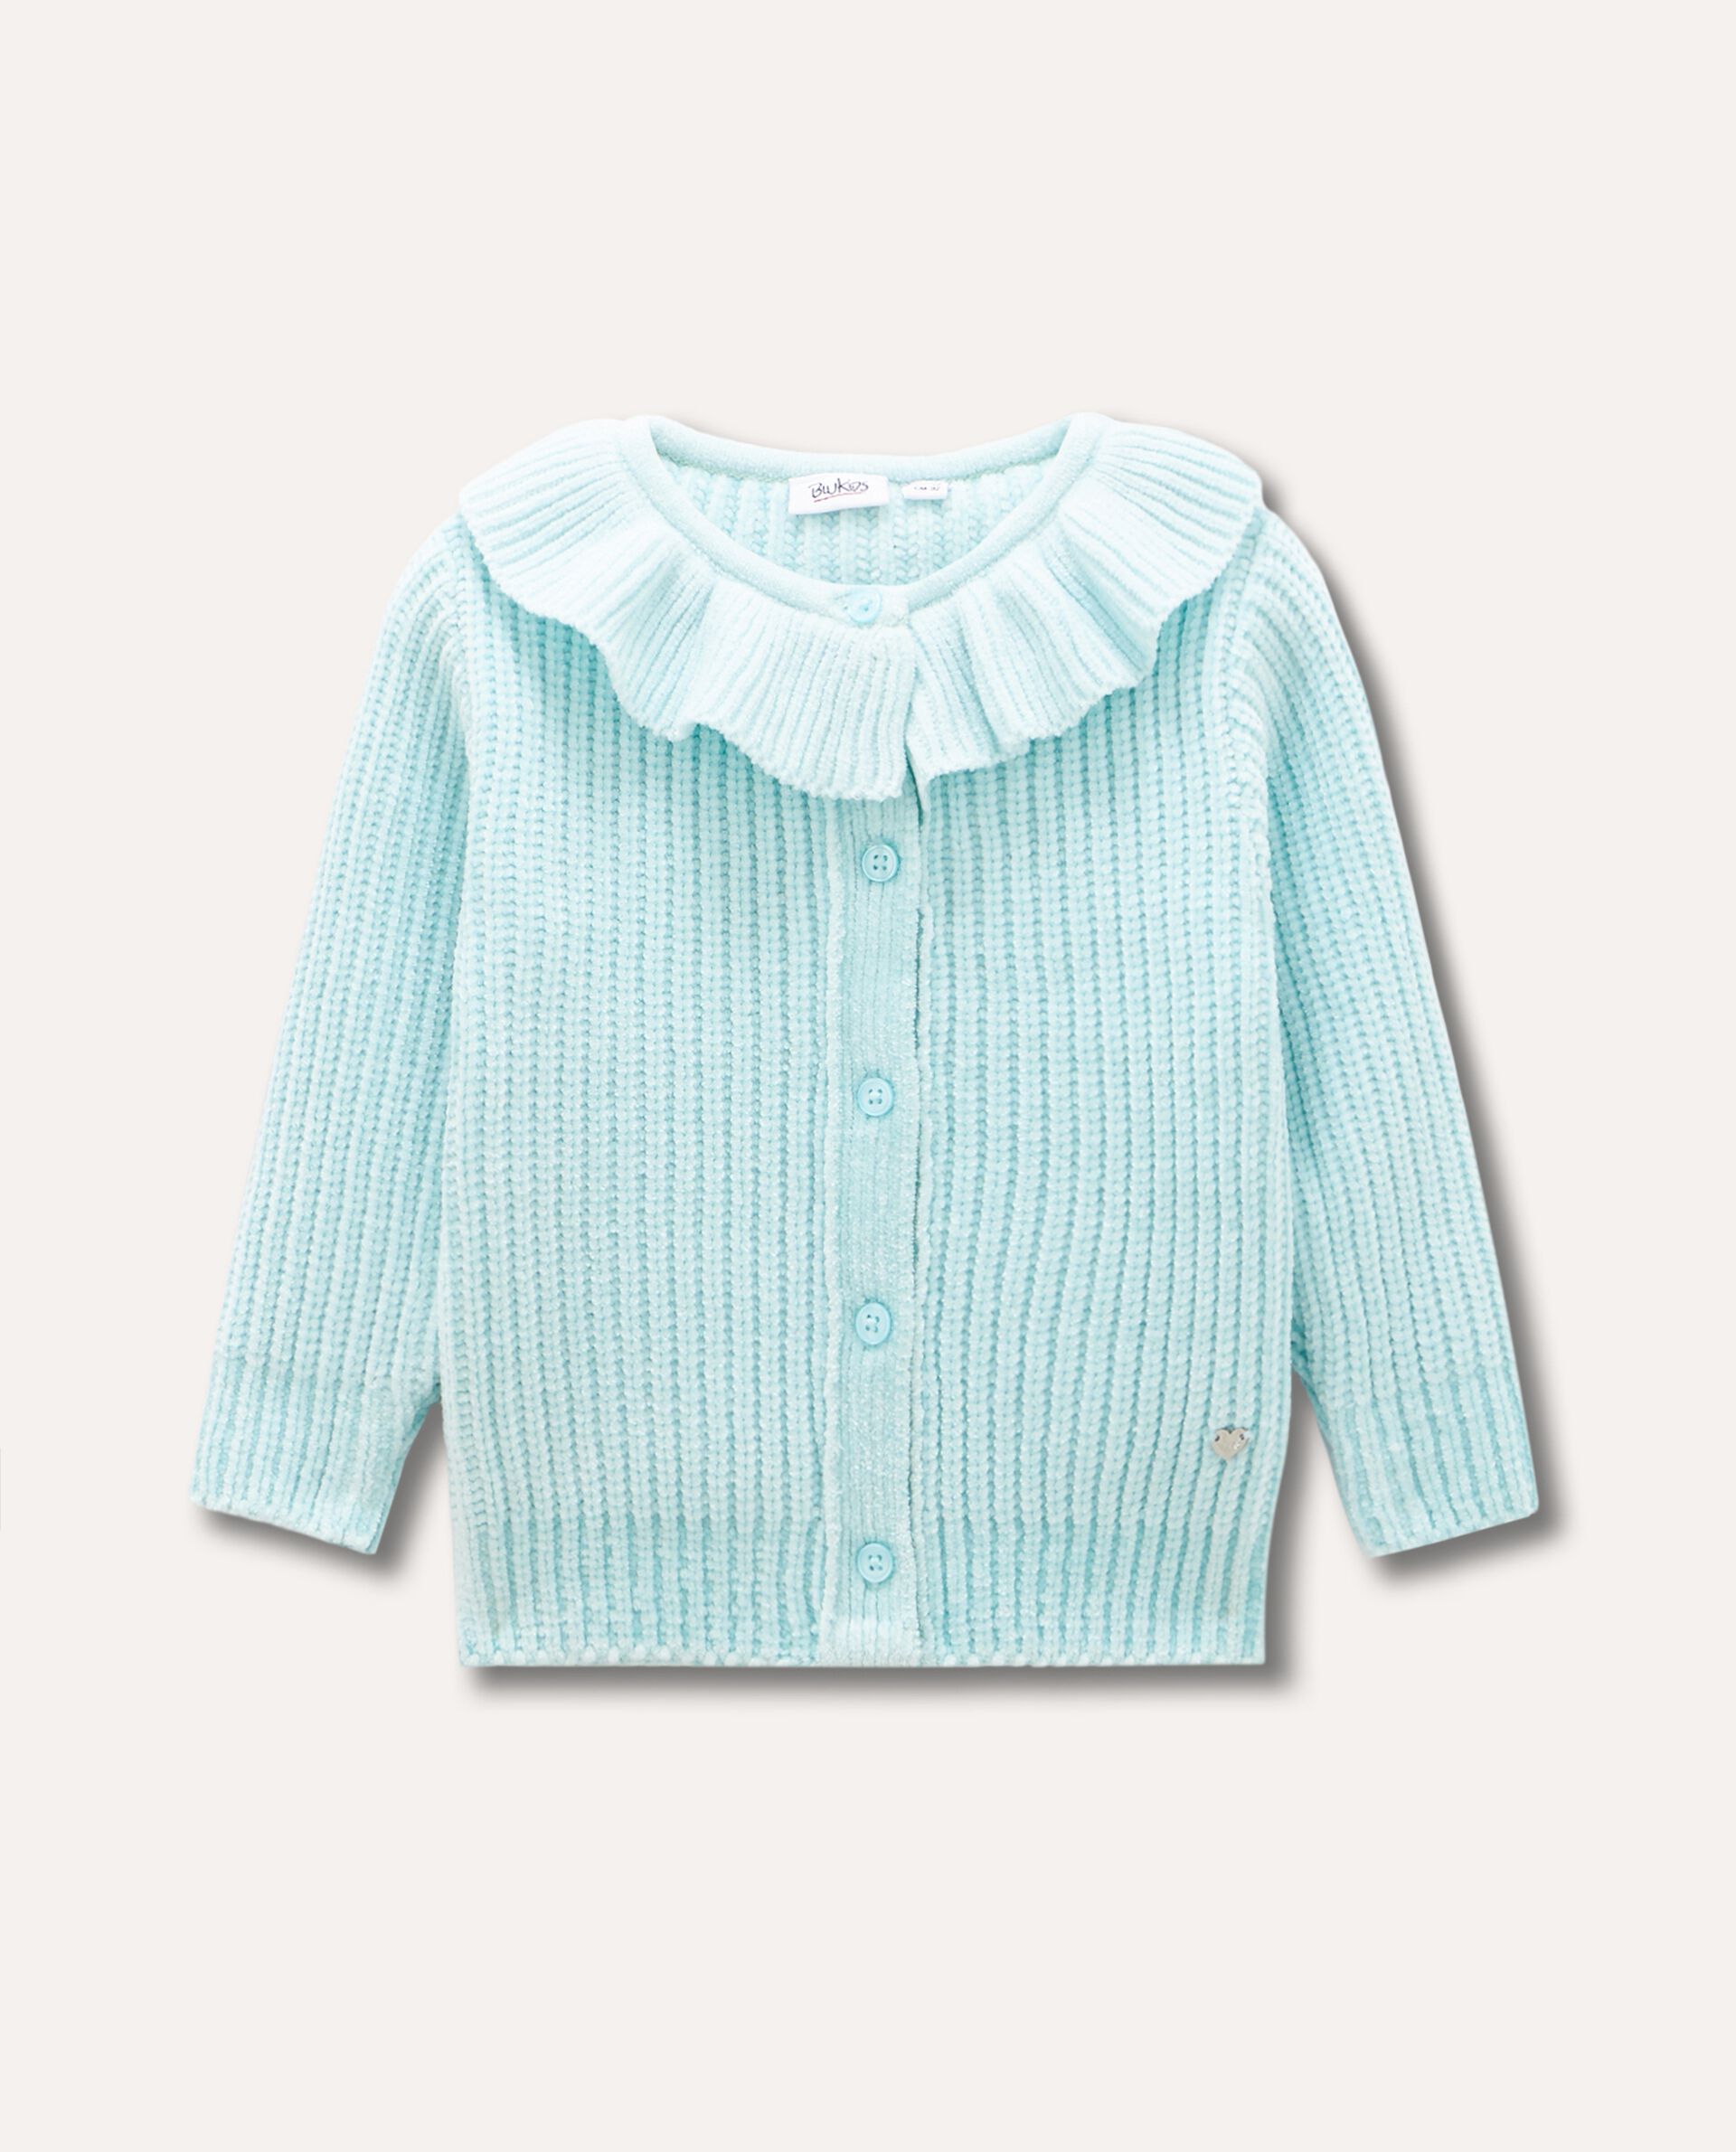 Cardigan in ciniglia tricot con rouches neonata